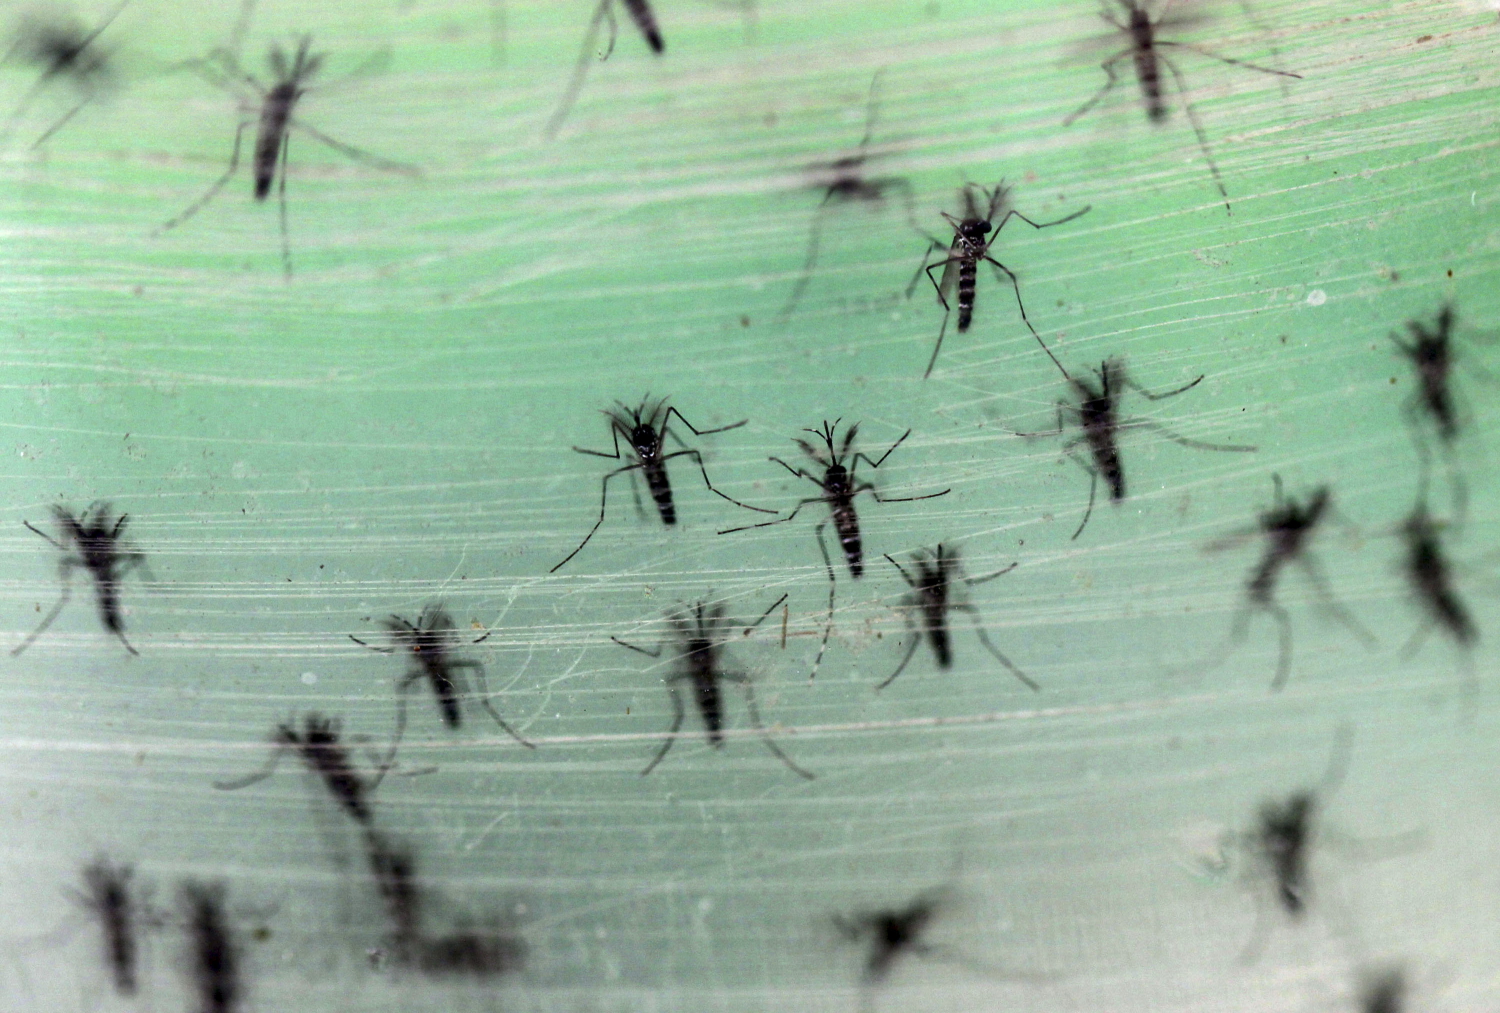 Hawái declara el estado de emergencia por dengue